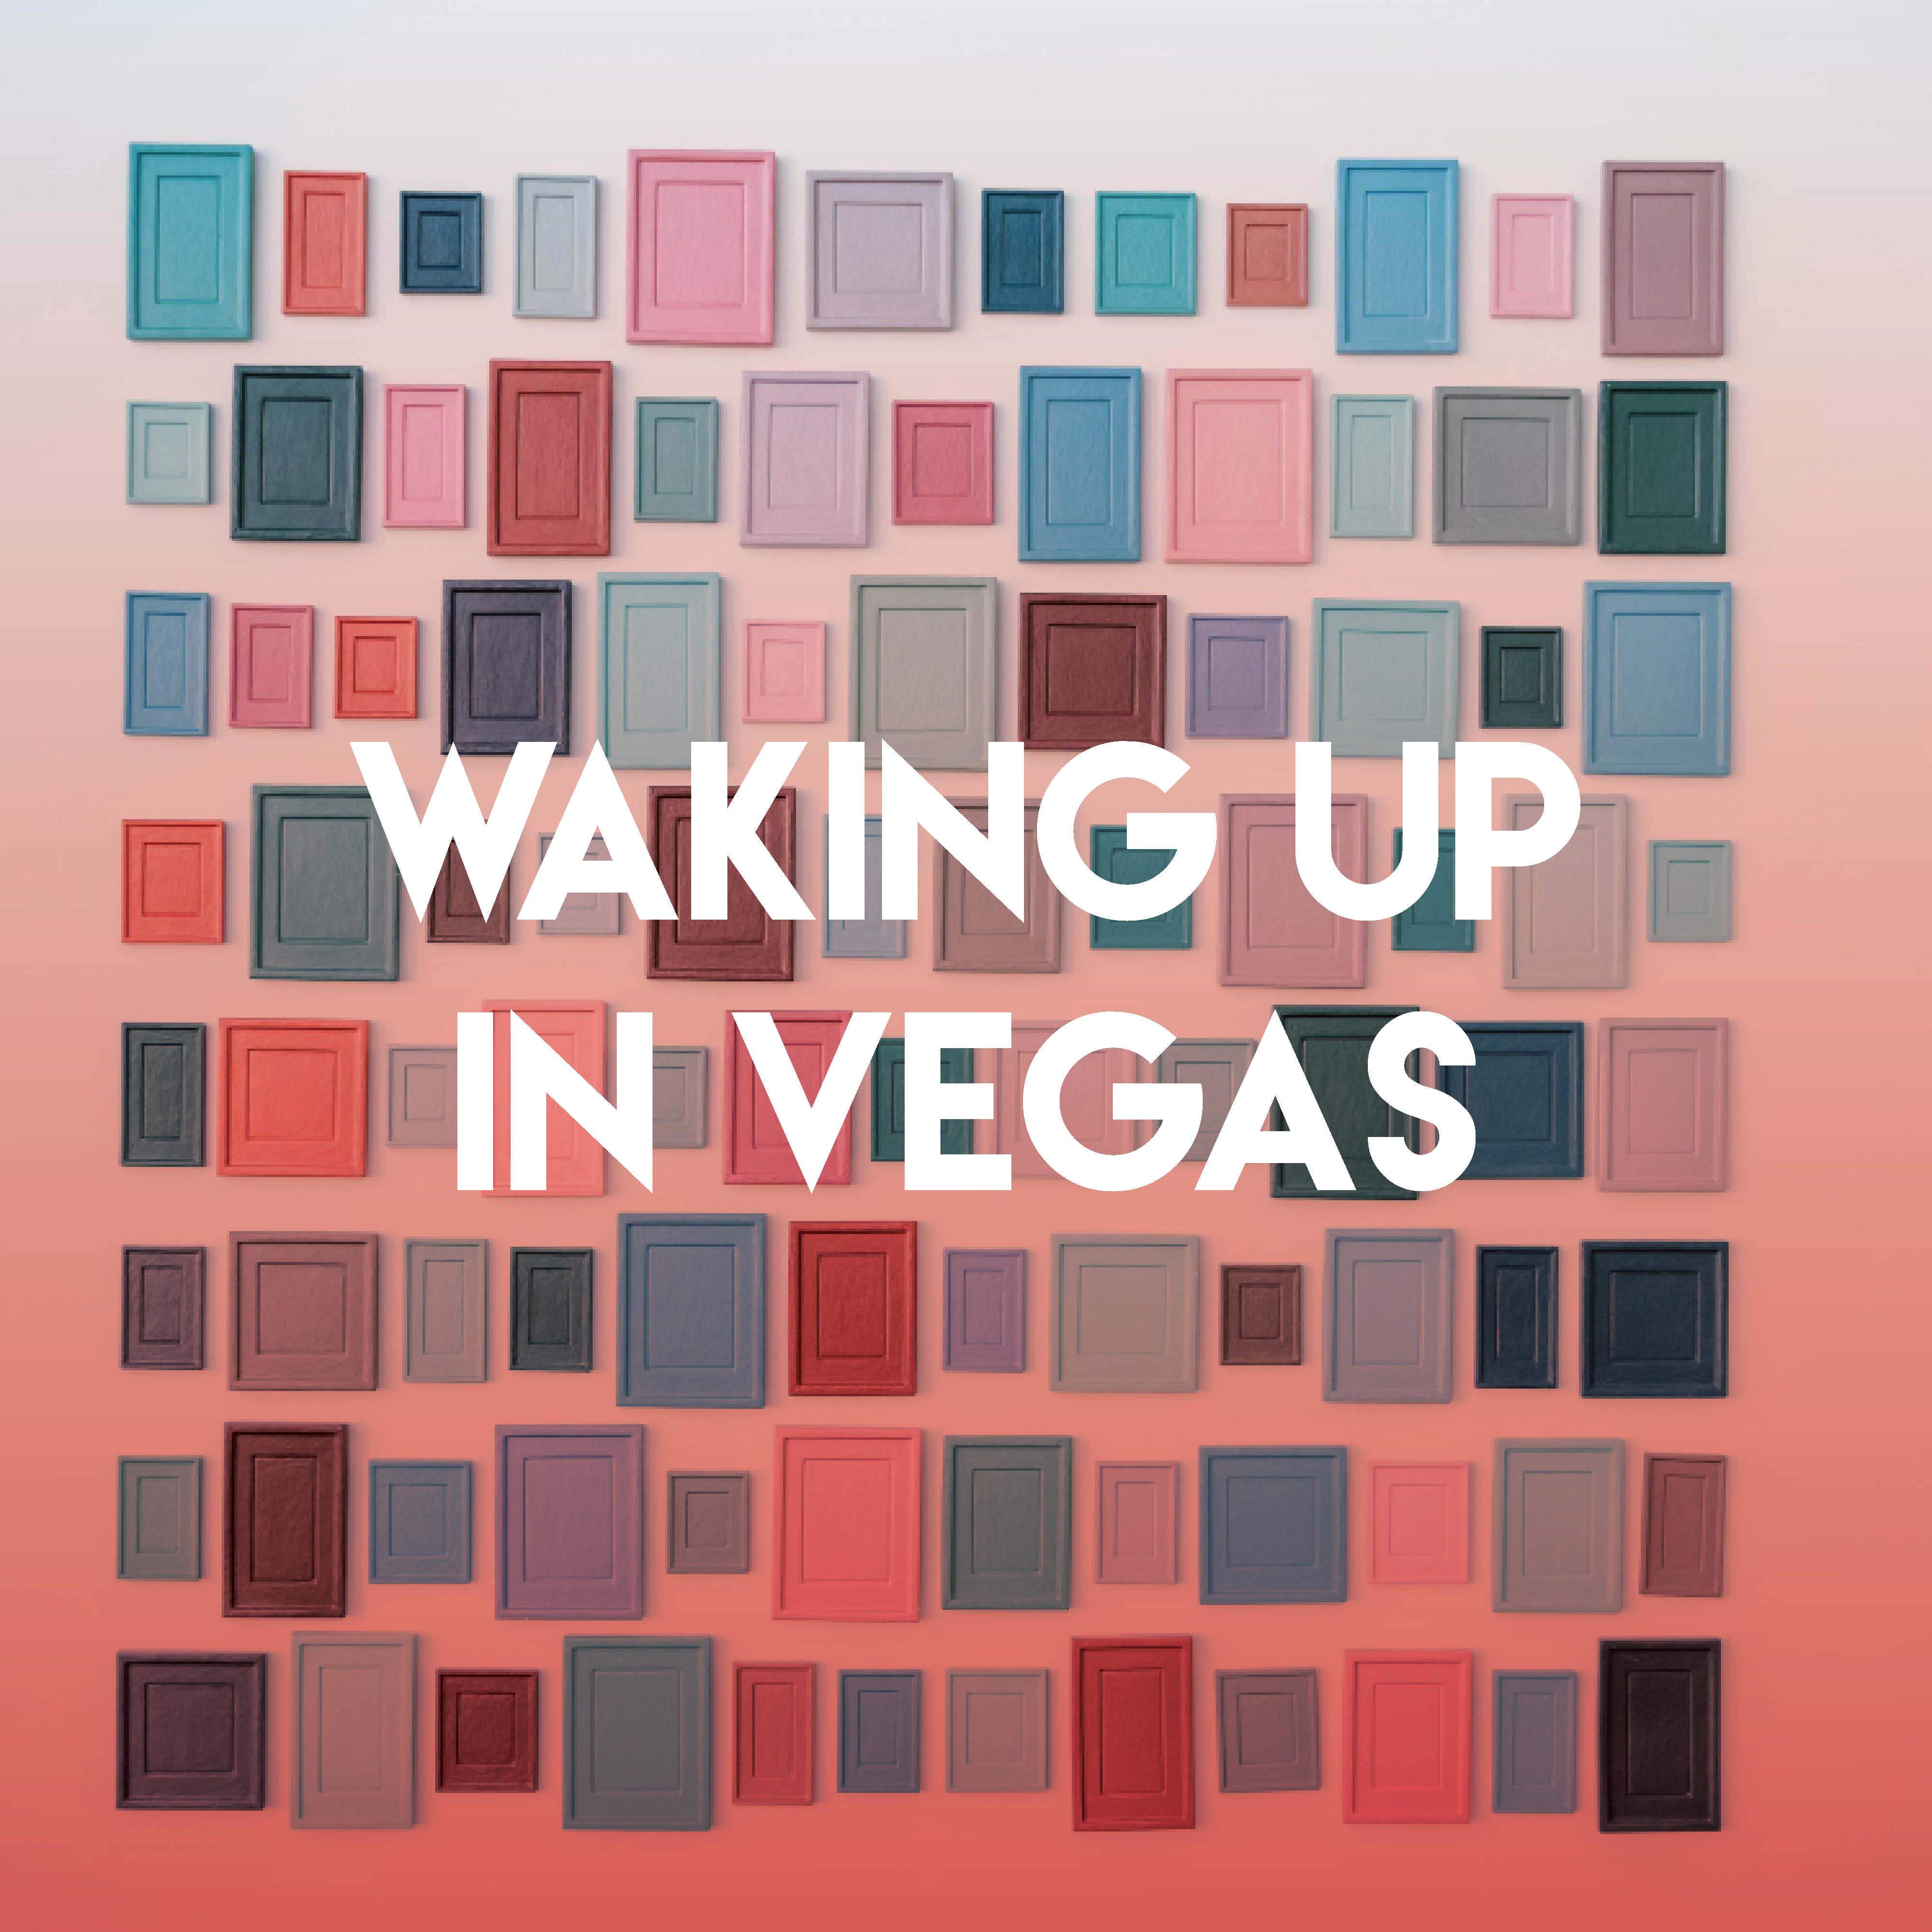 Waking Up in Vegas